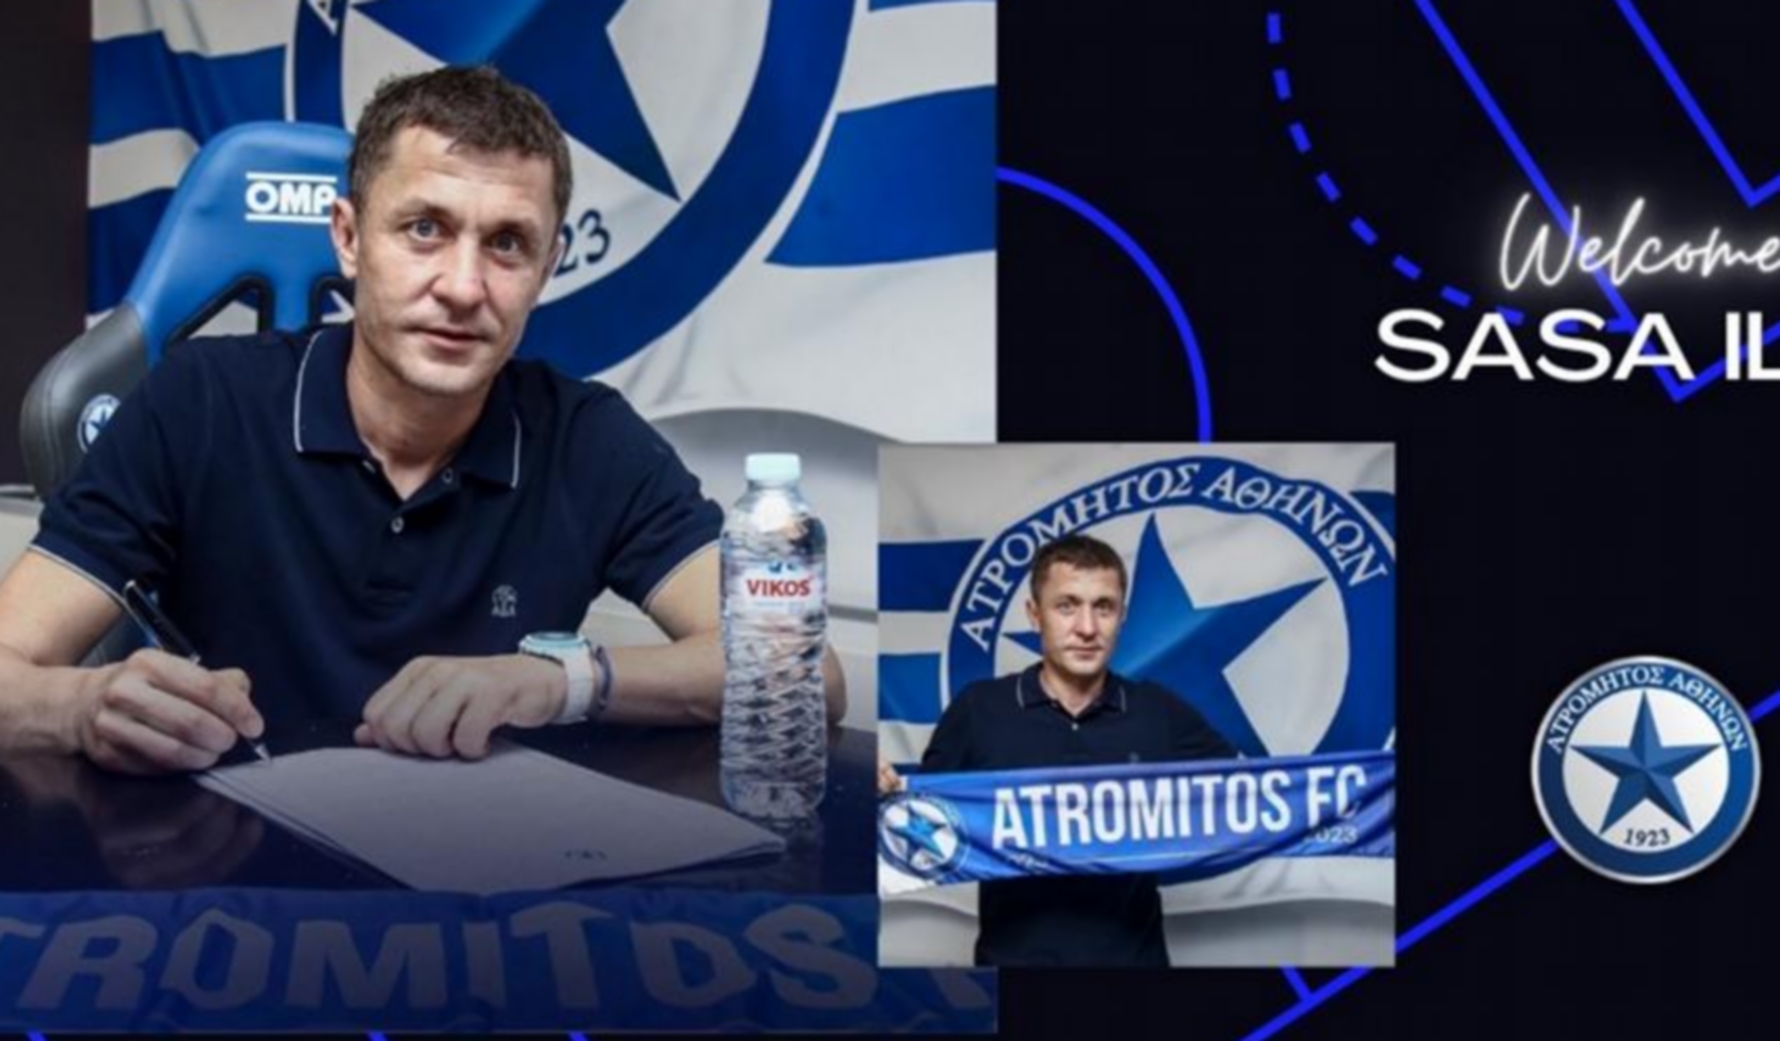 Ατρόμητος: Ο Σάσα Ίλιτς νέος προπονητής του συλλόγου